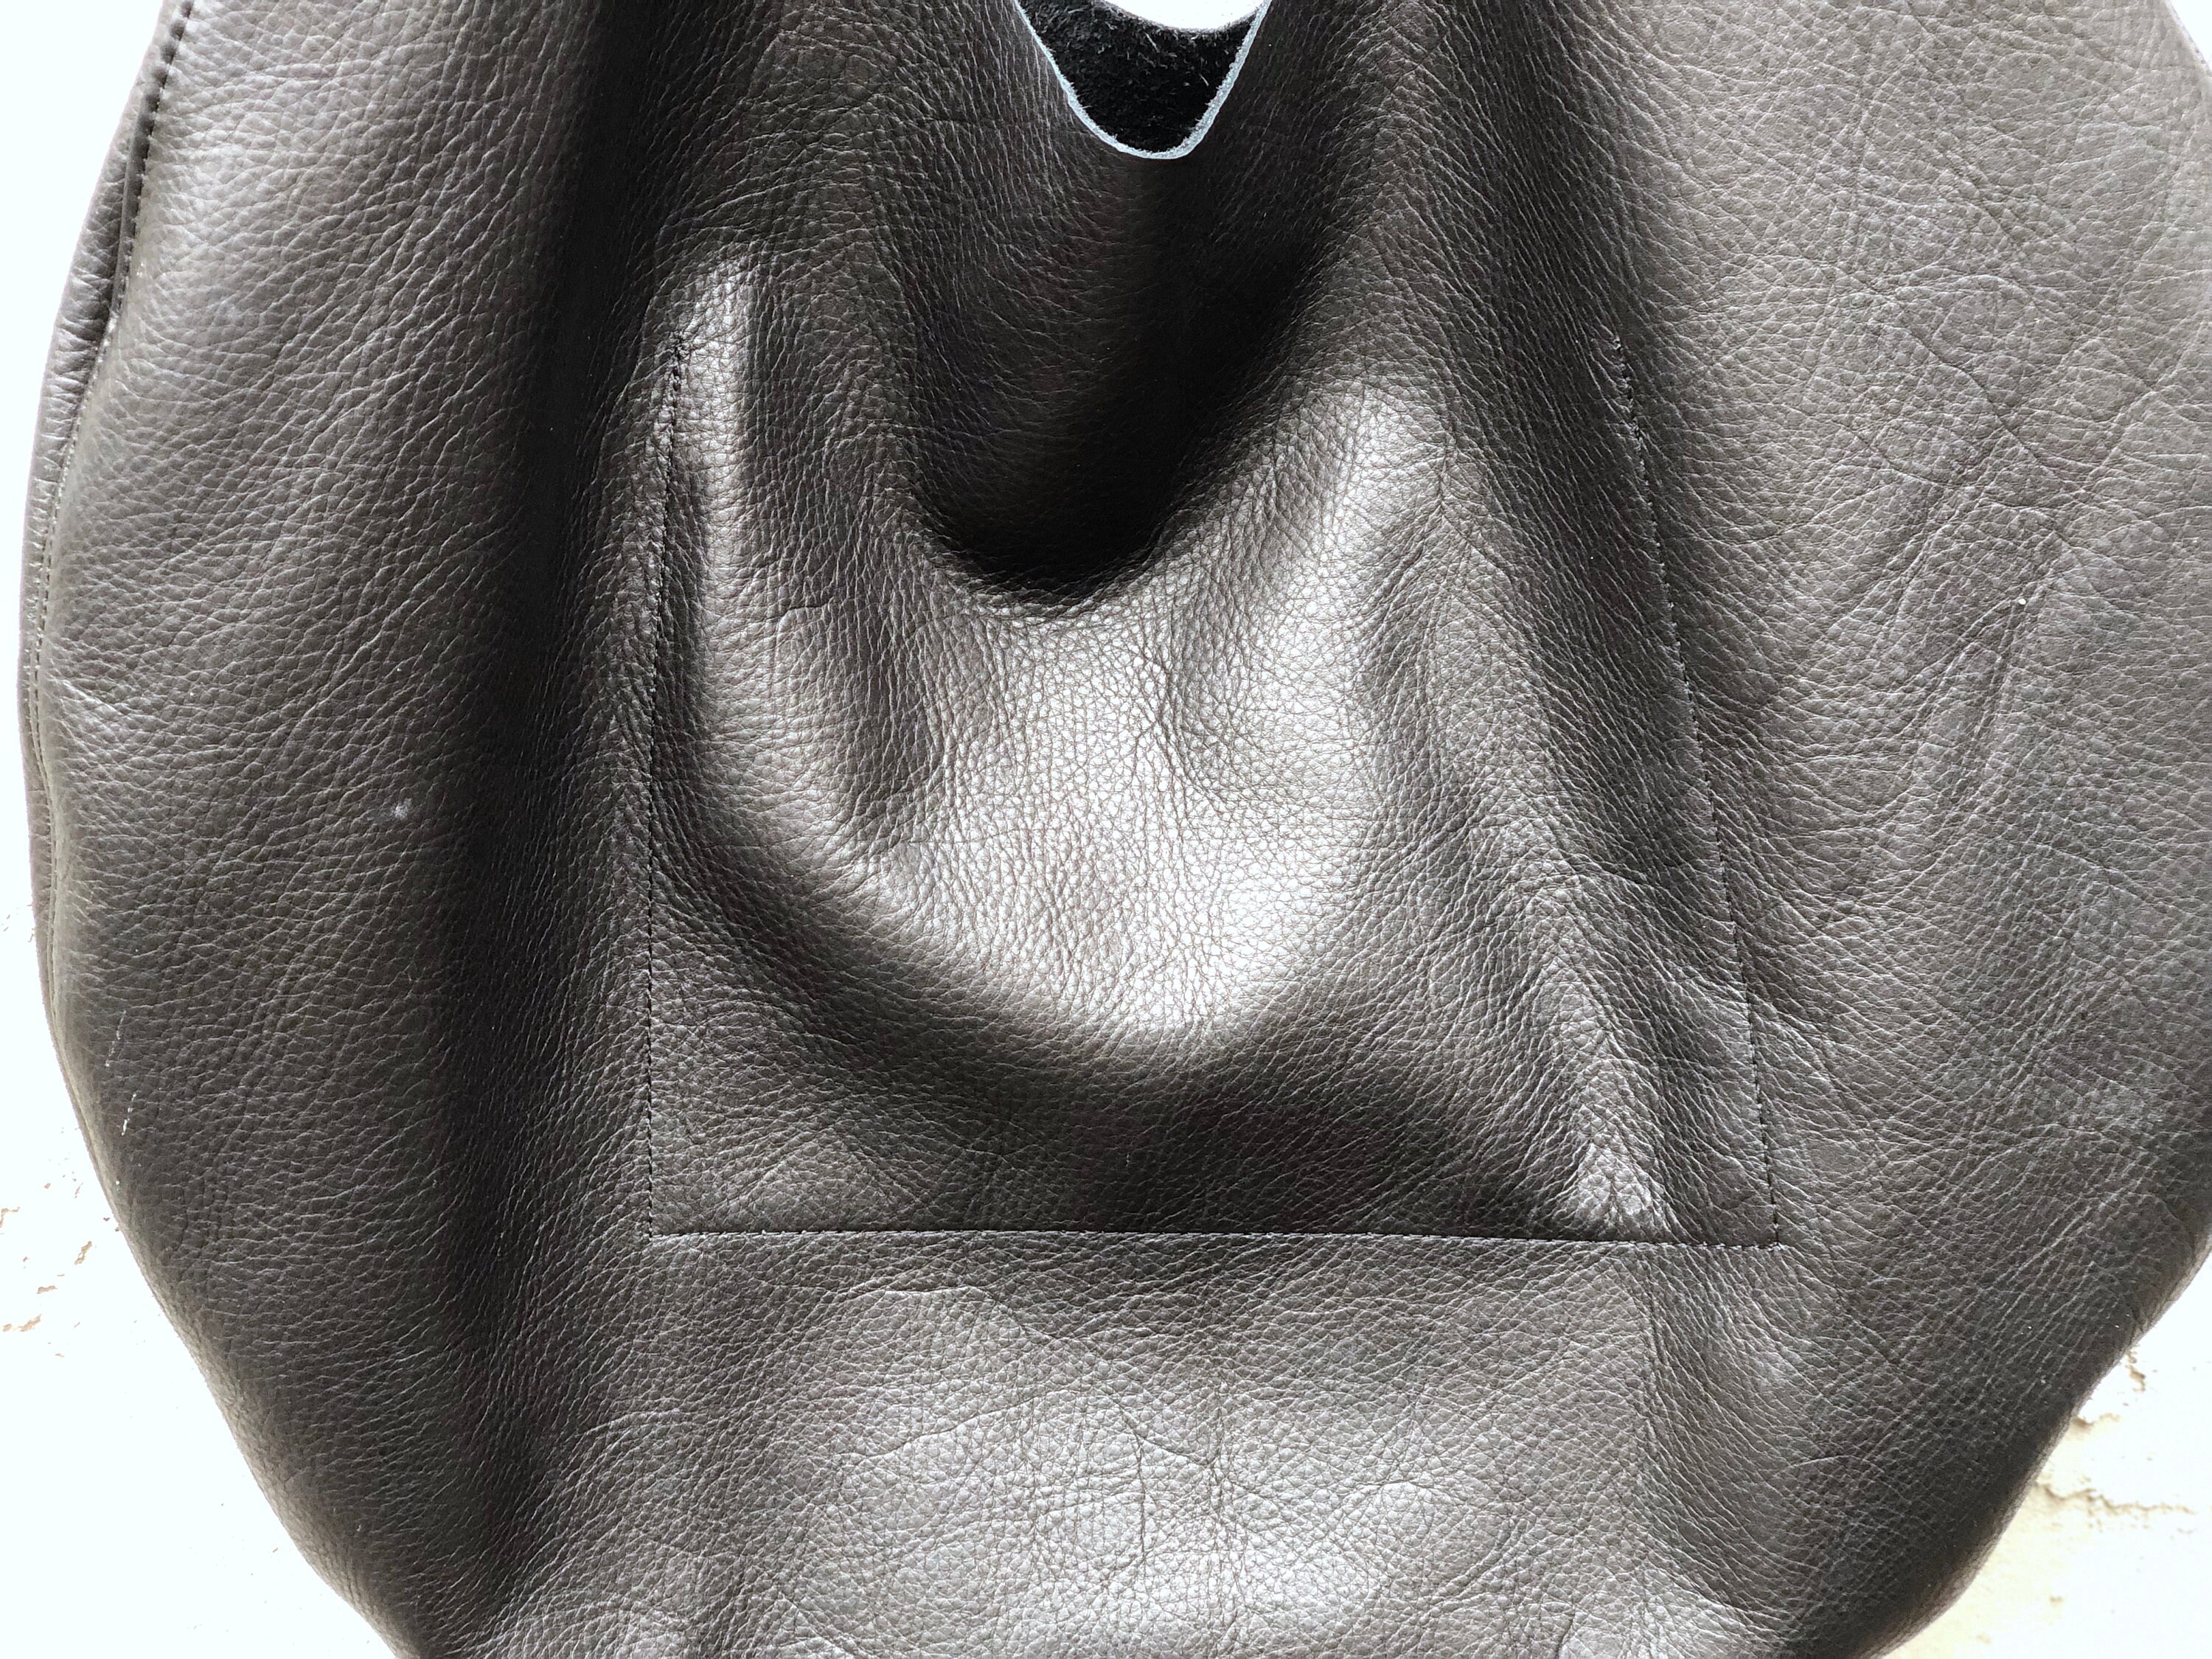 Buy Black Slouchy Shoulder Bag Round Hobo Bag Overnight Bag Online